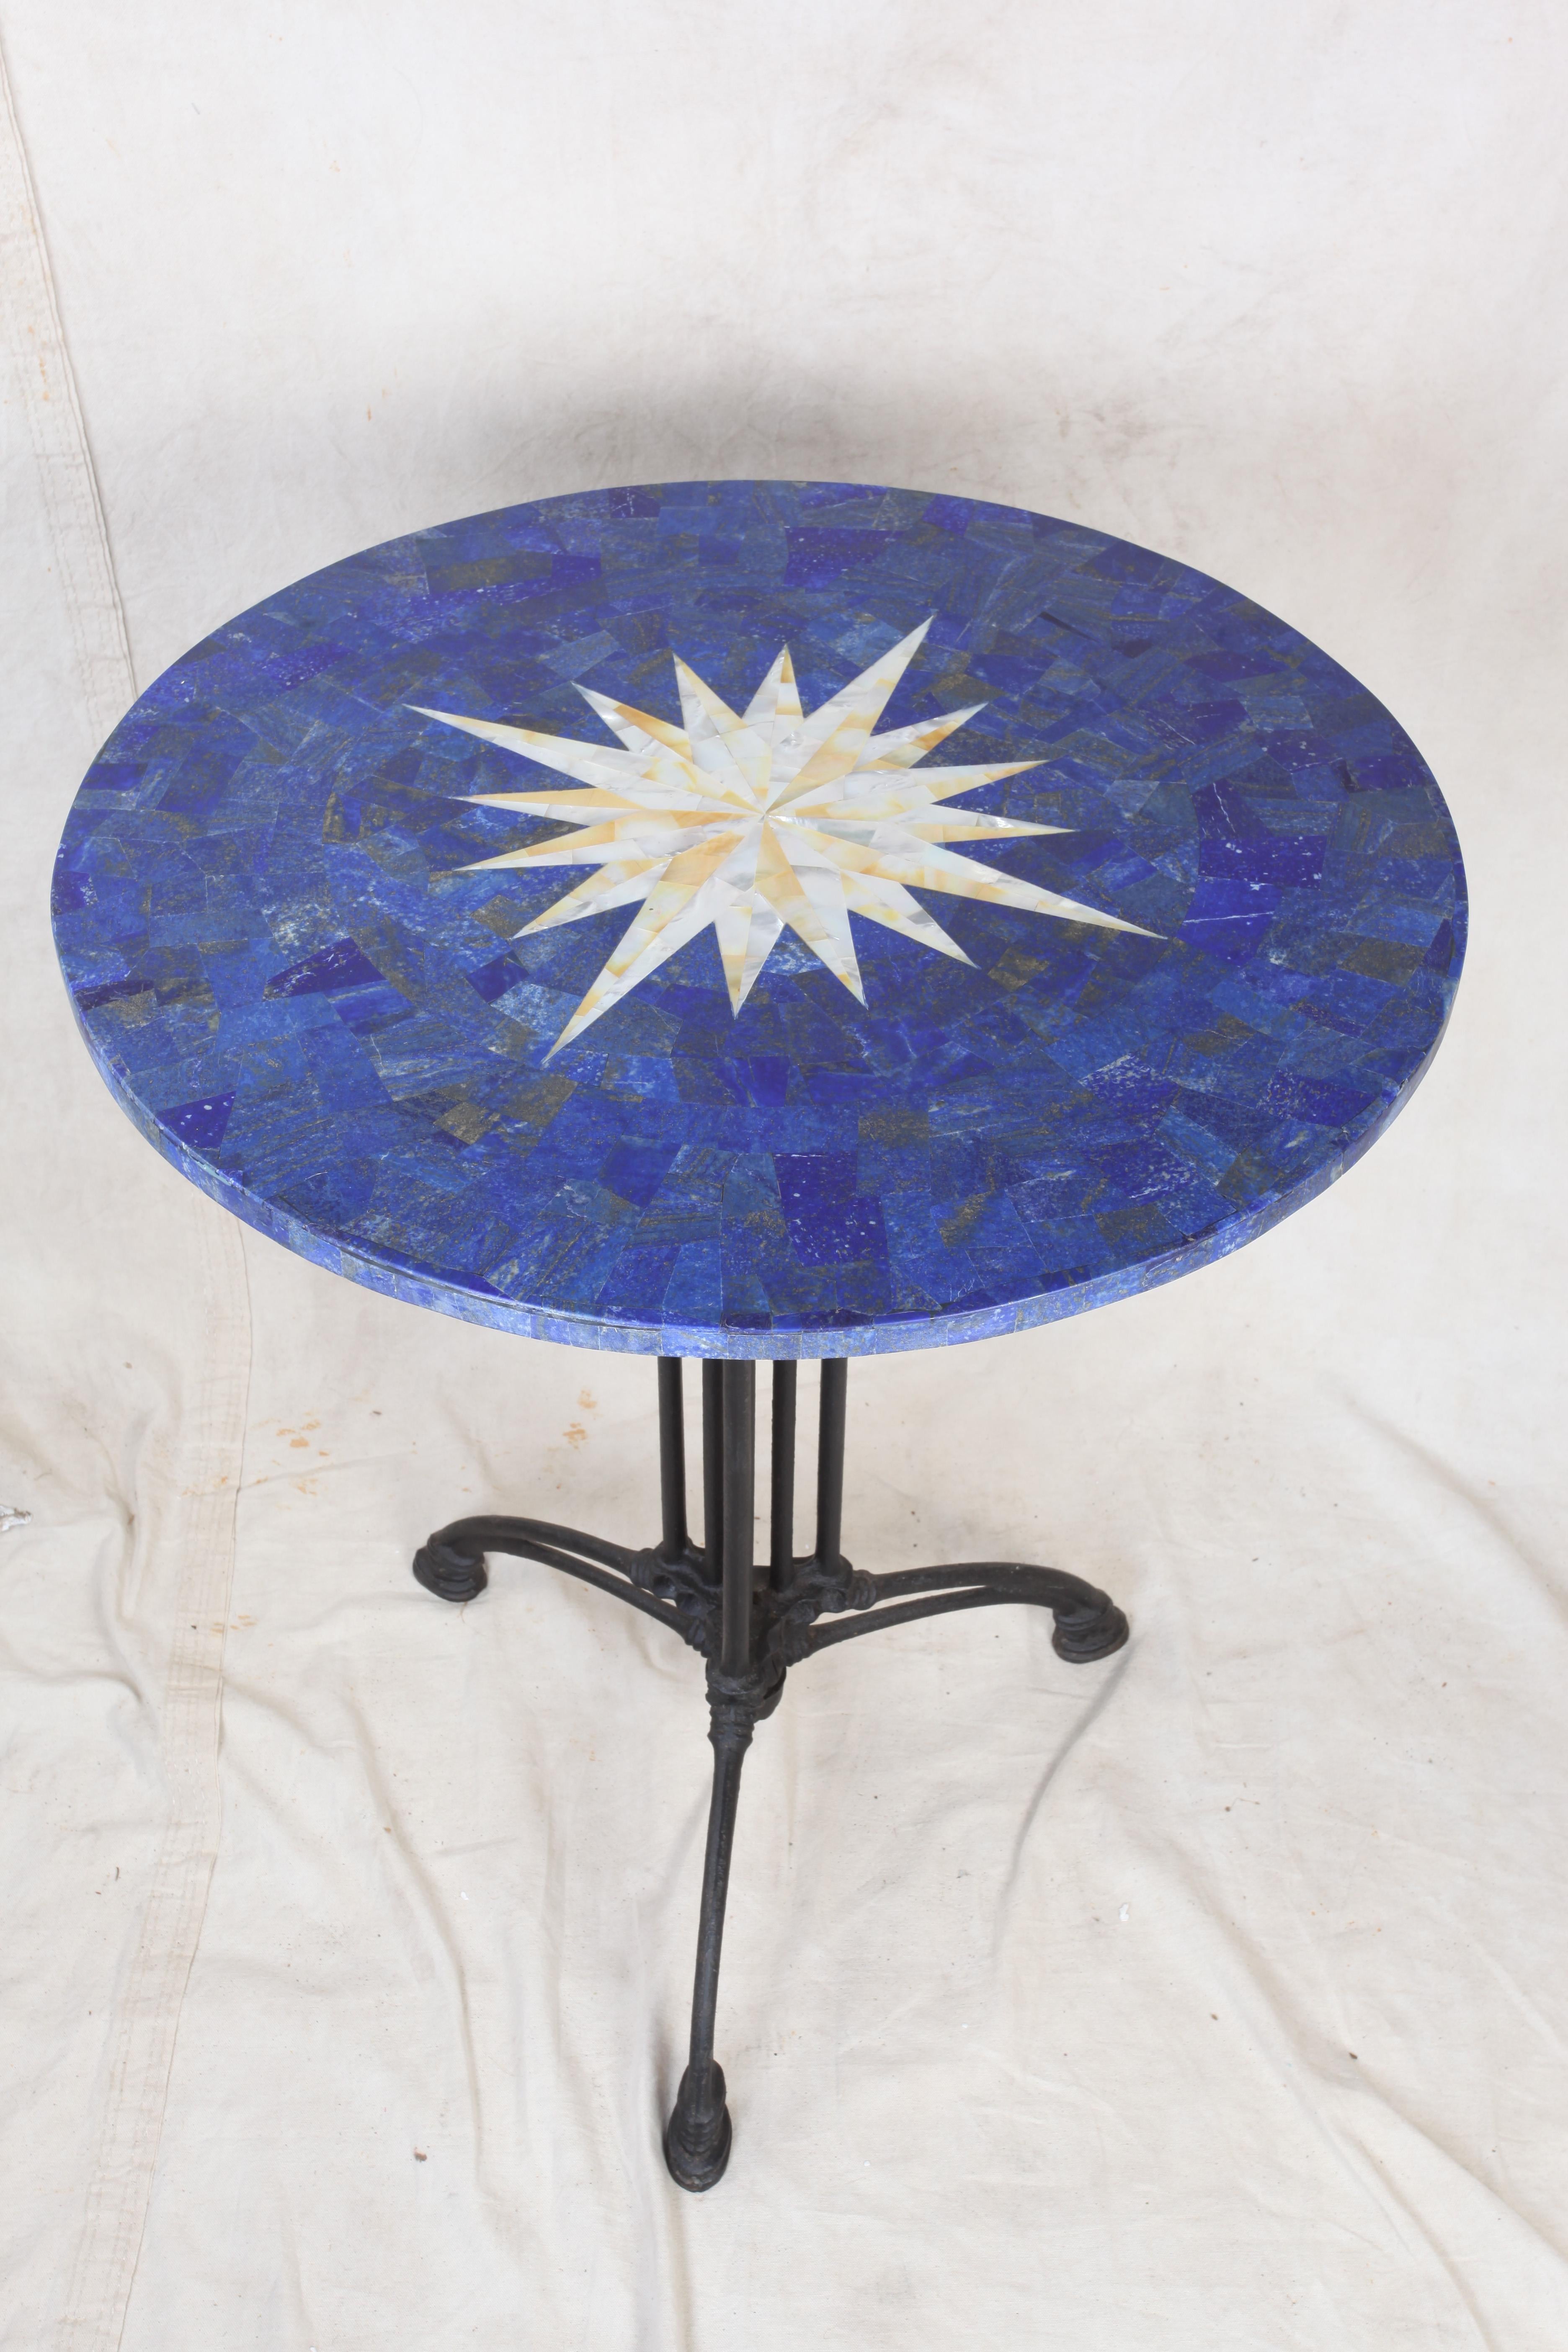 Eine Tischplatte aus Lapislazuli und Pietra dura mit einer eingelegten Windrose aus Perlmutt. Steht auf einem pulverbeschichteten Aluminiumsockel. Can drinnen oder draußen verwendet werden.